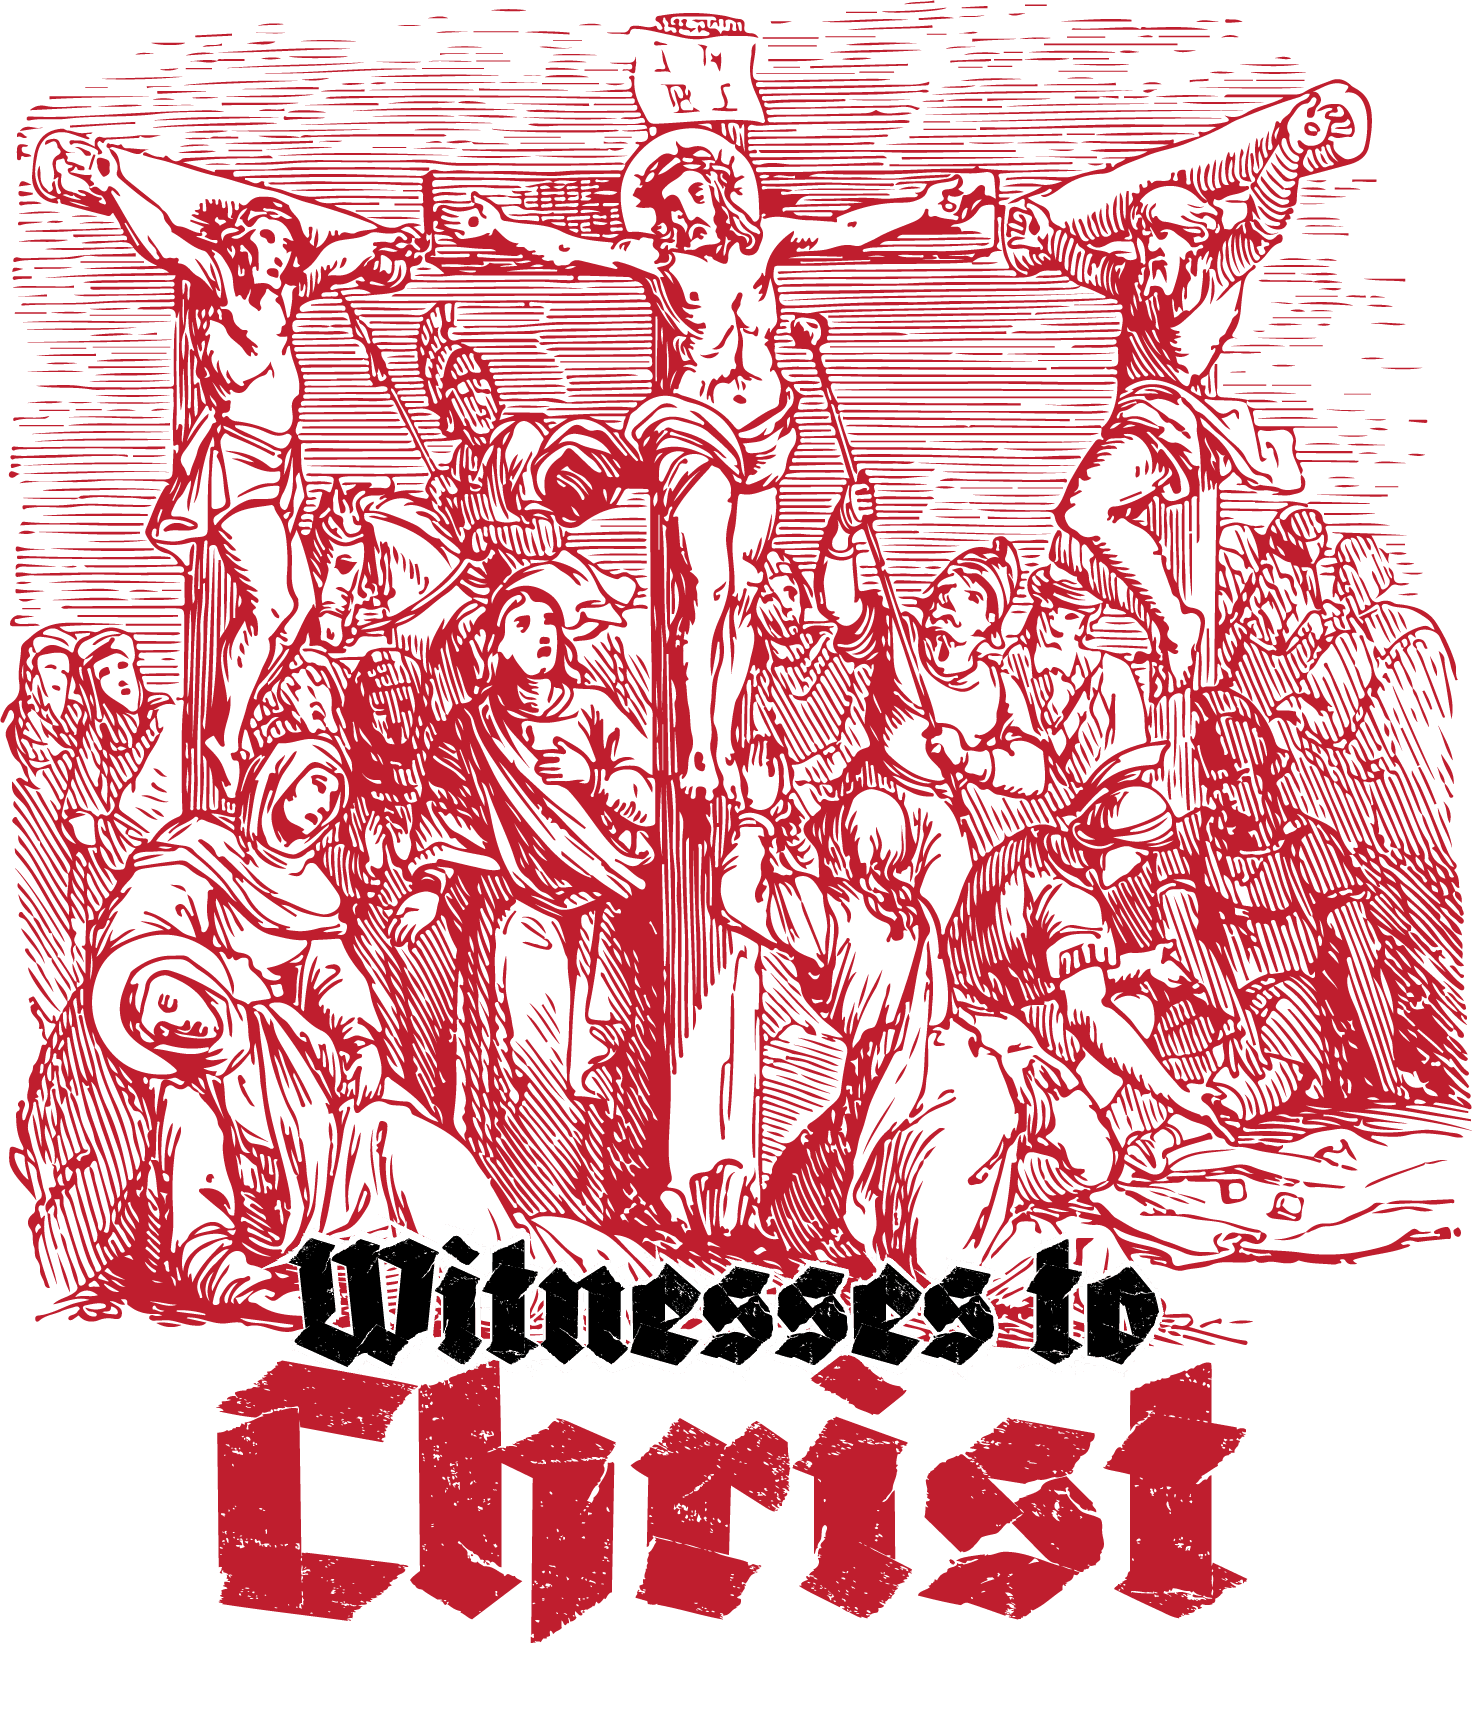 Witness To Christ – John the Baptist